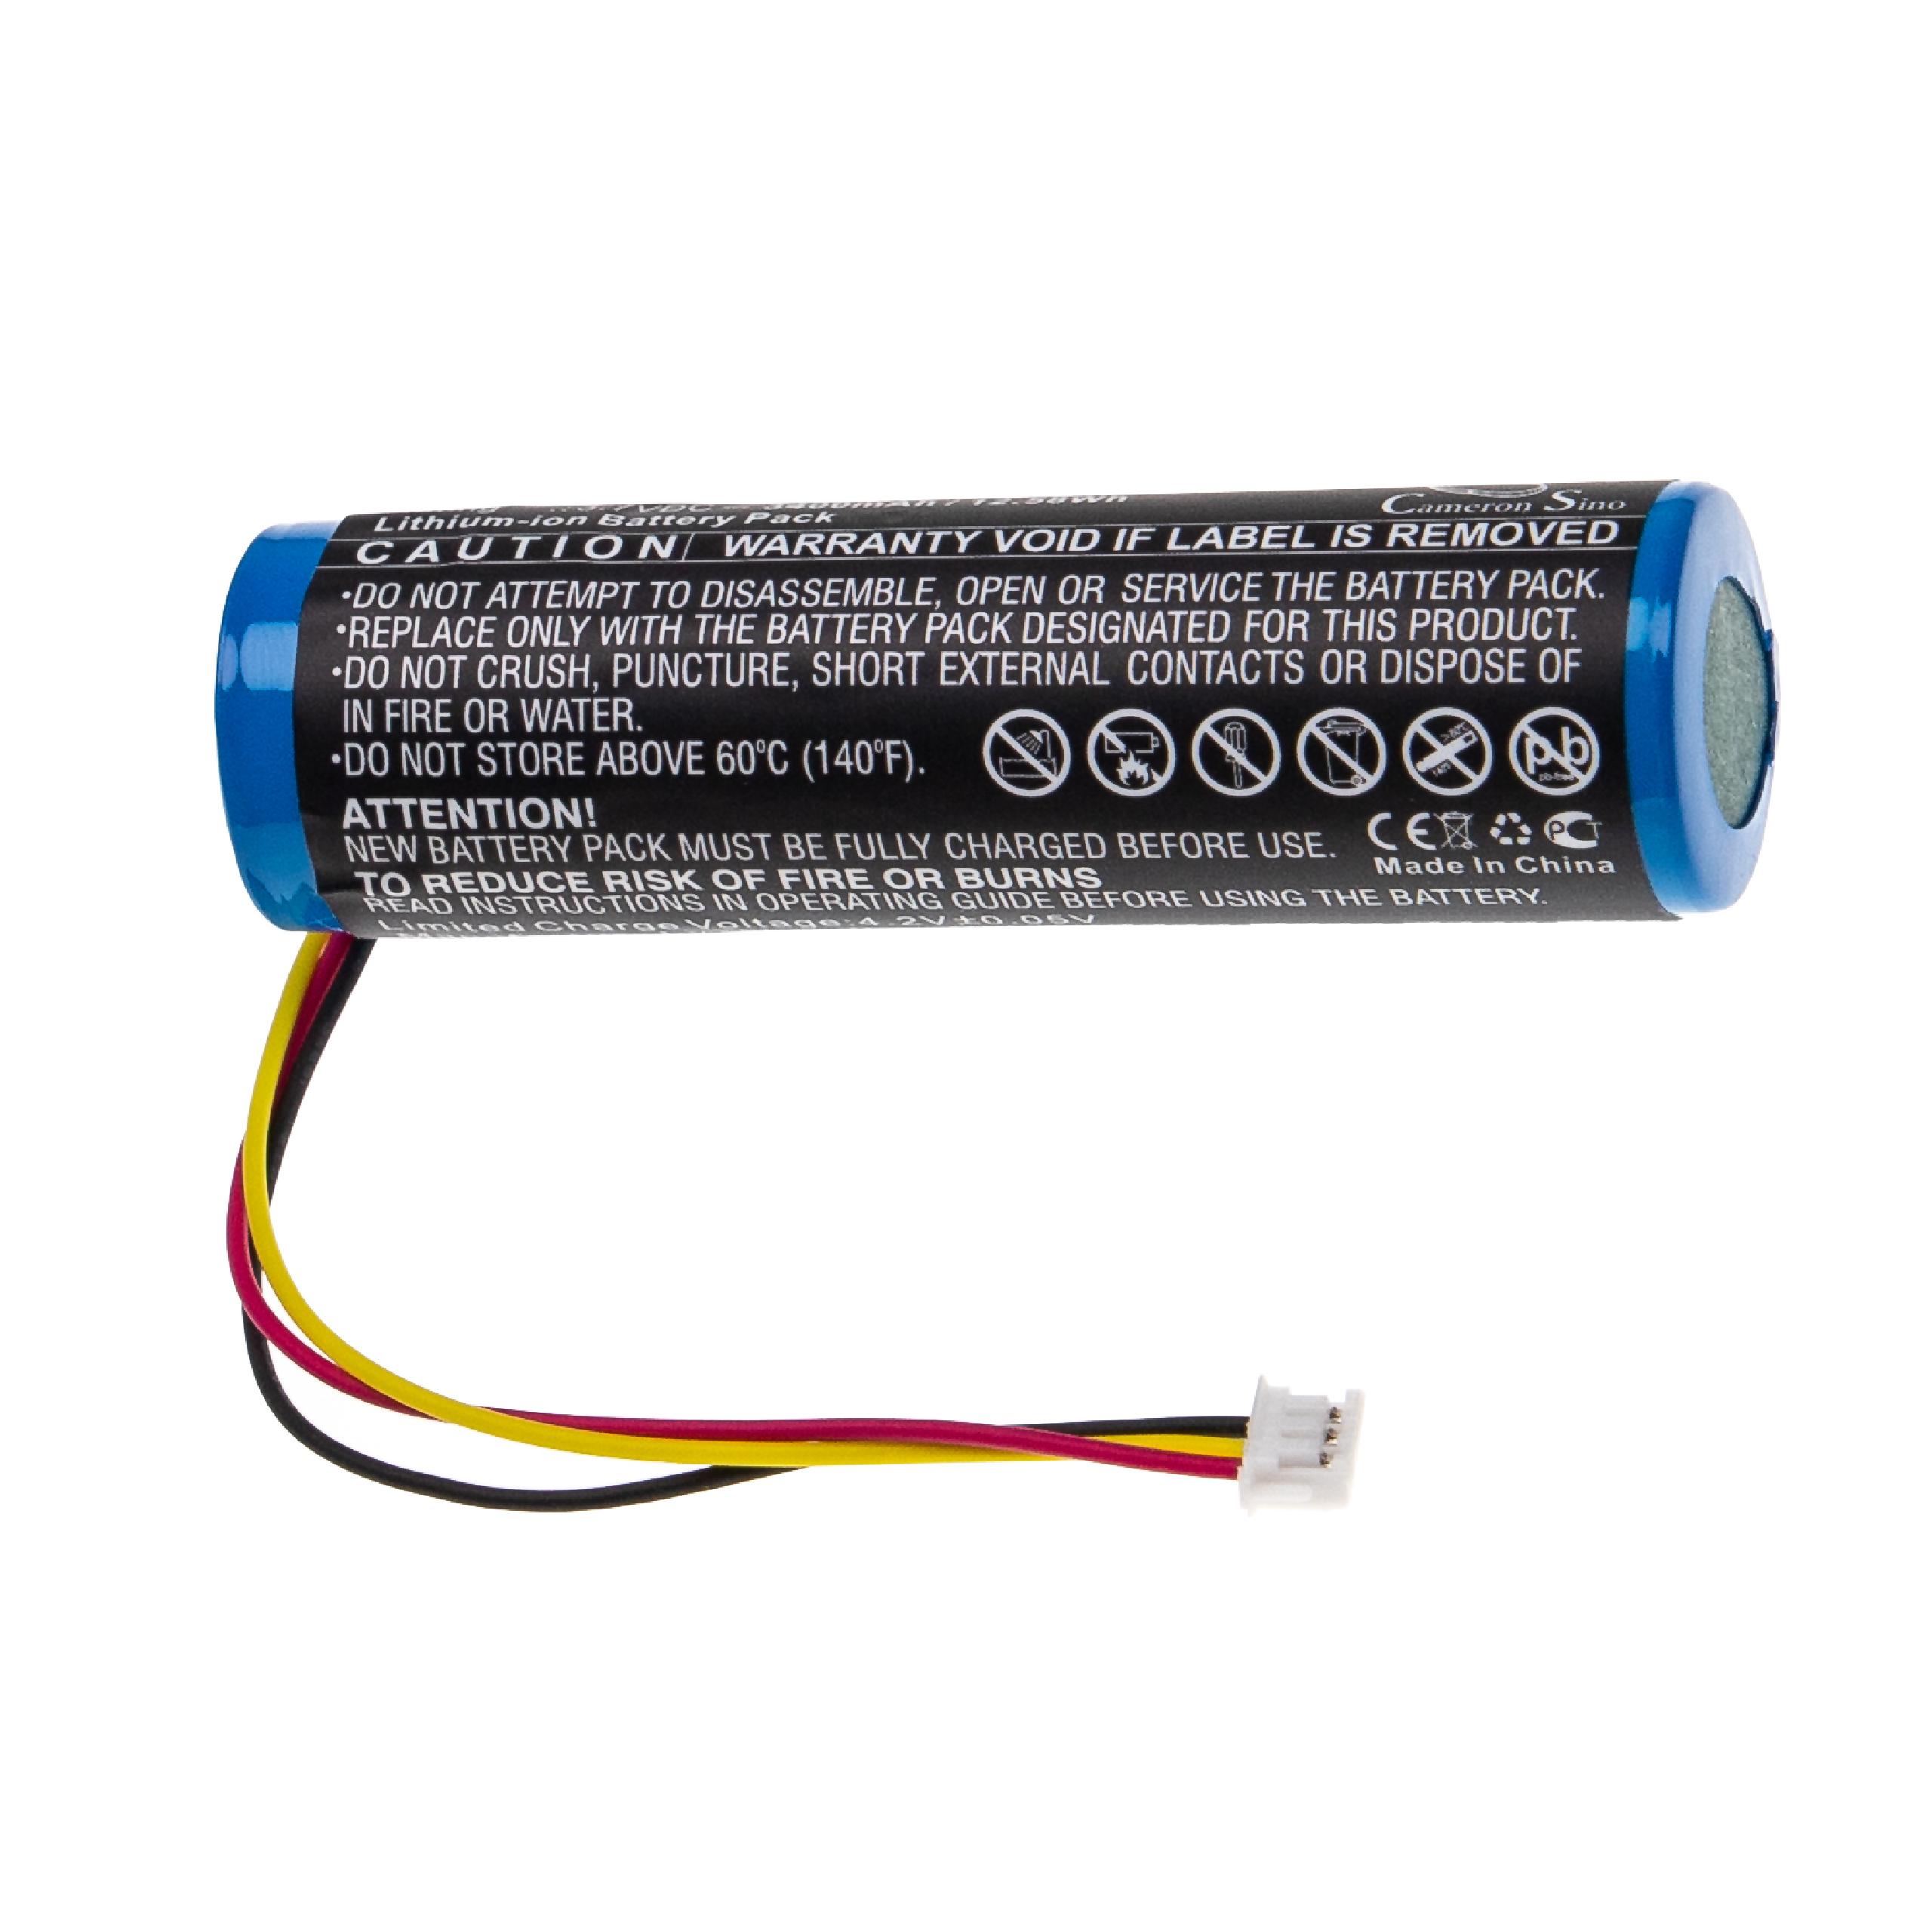 Batterie remplace AKAI 1ABTUR18650ZY01, NB2537-R0 pour instrument à vent - 3400mAh 3,7V Li-ion